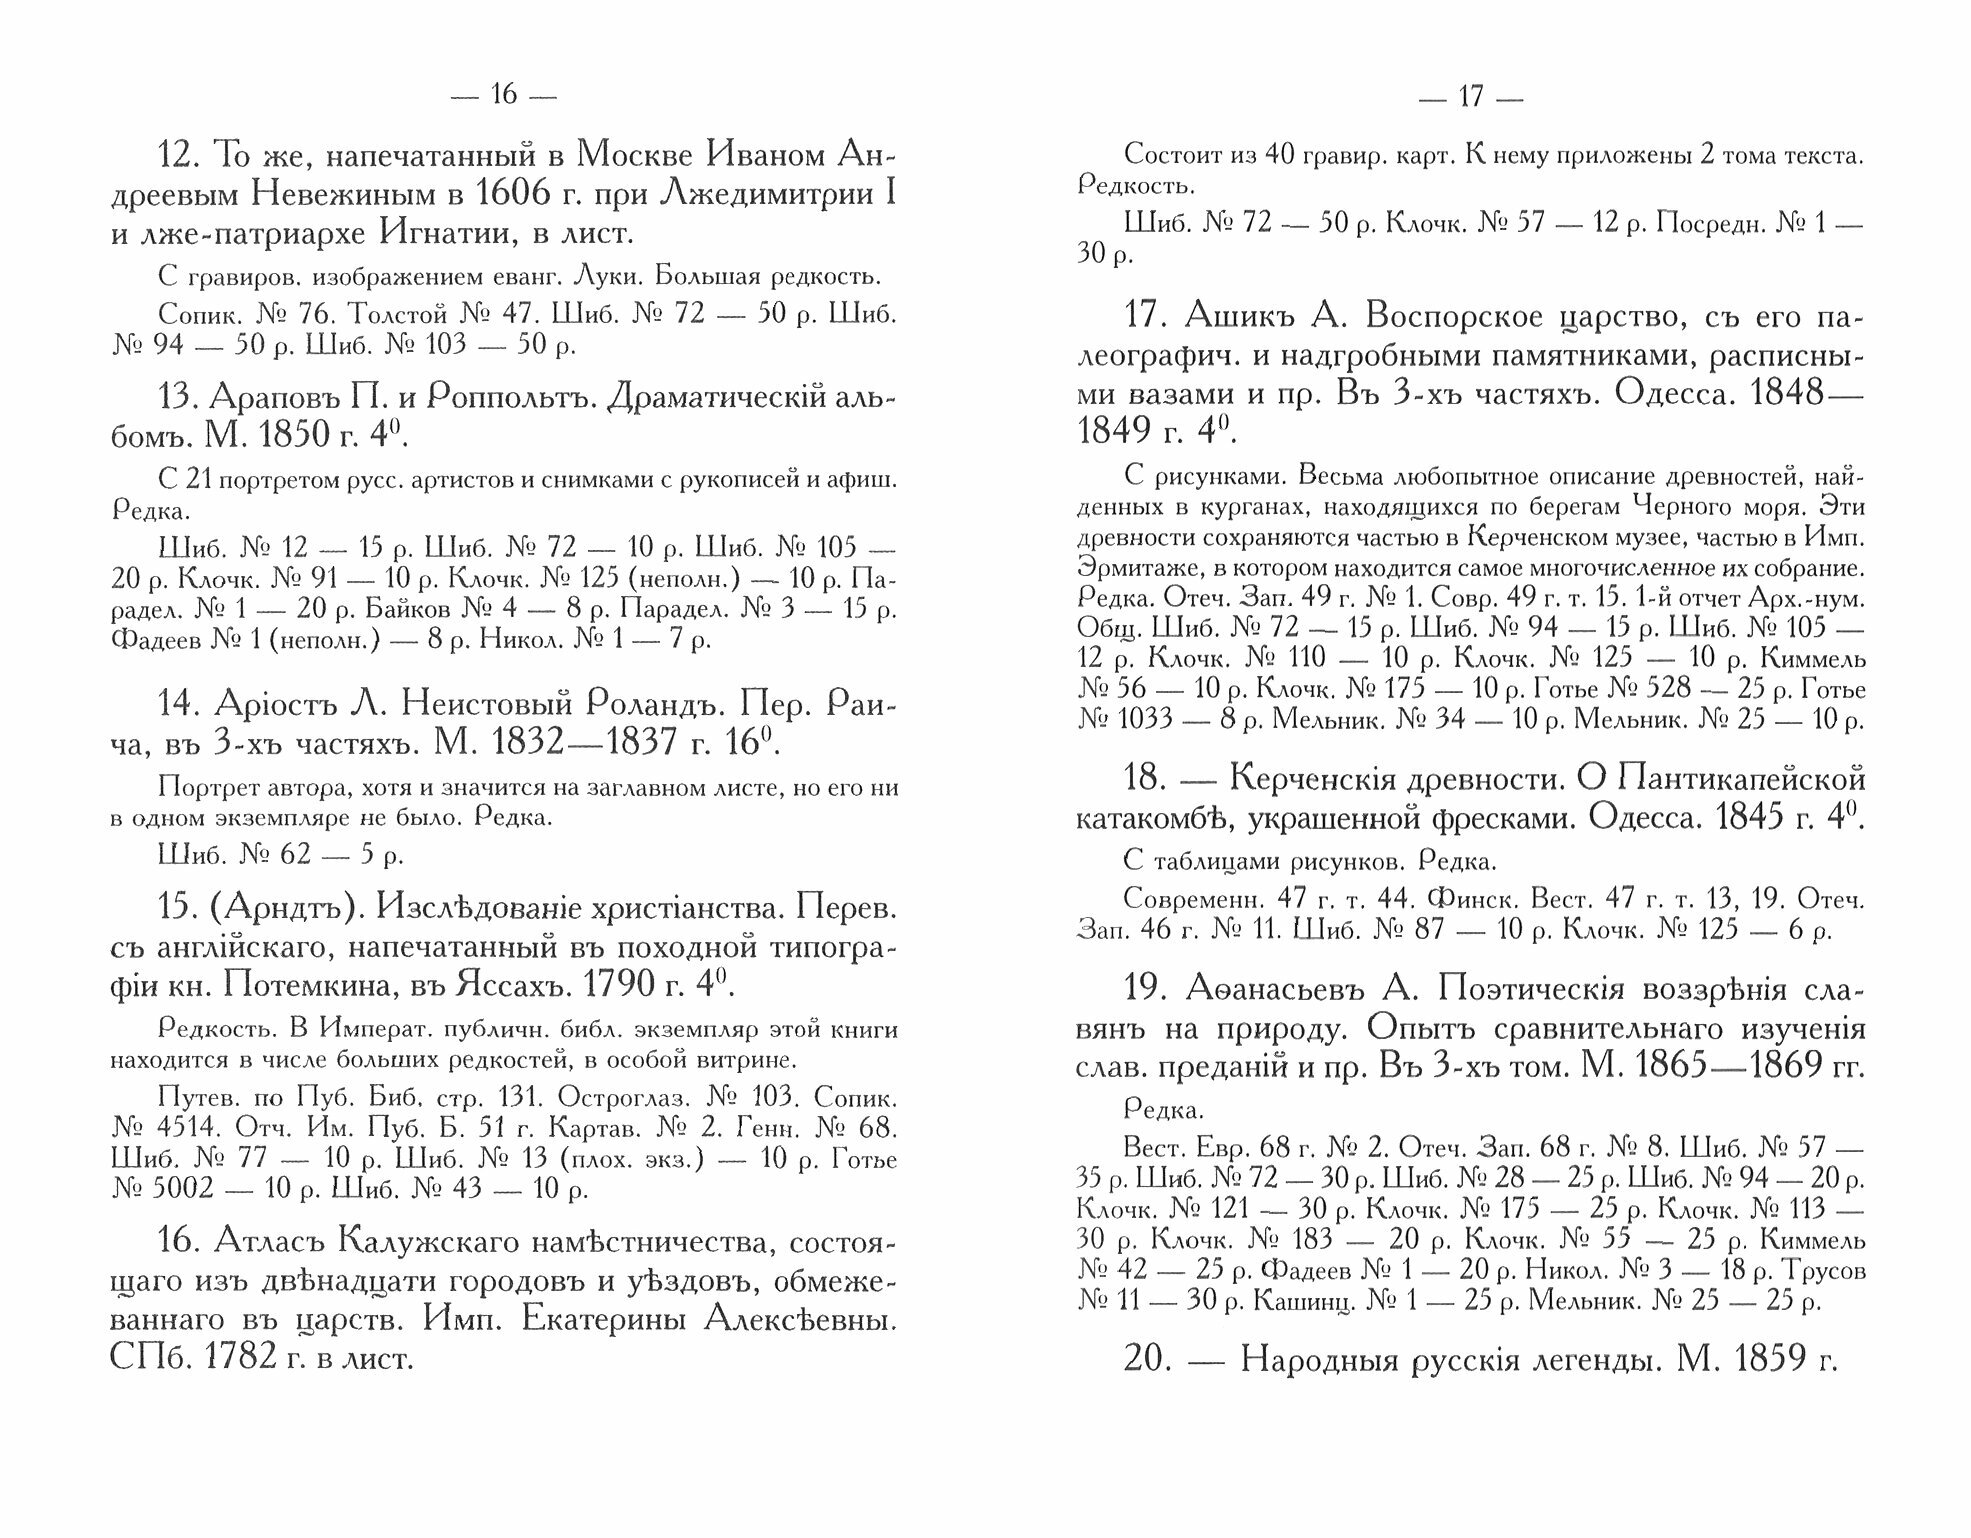 Русские книжные редкости Опыт библиографического описания редких книг с указанием их ценности - фото №2